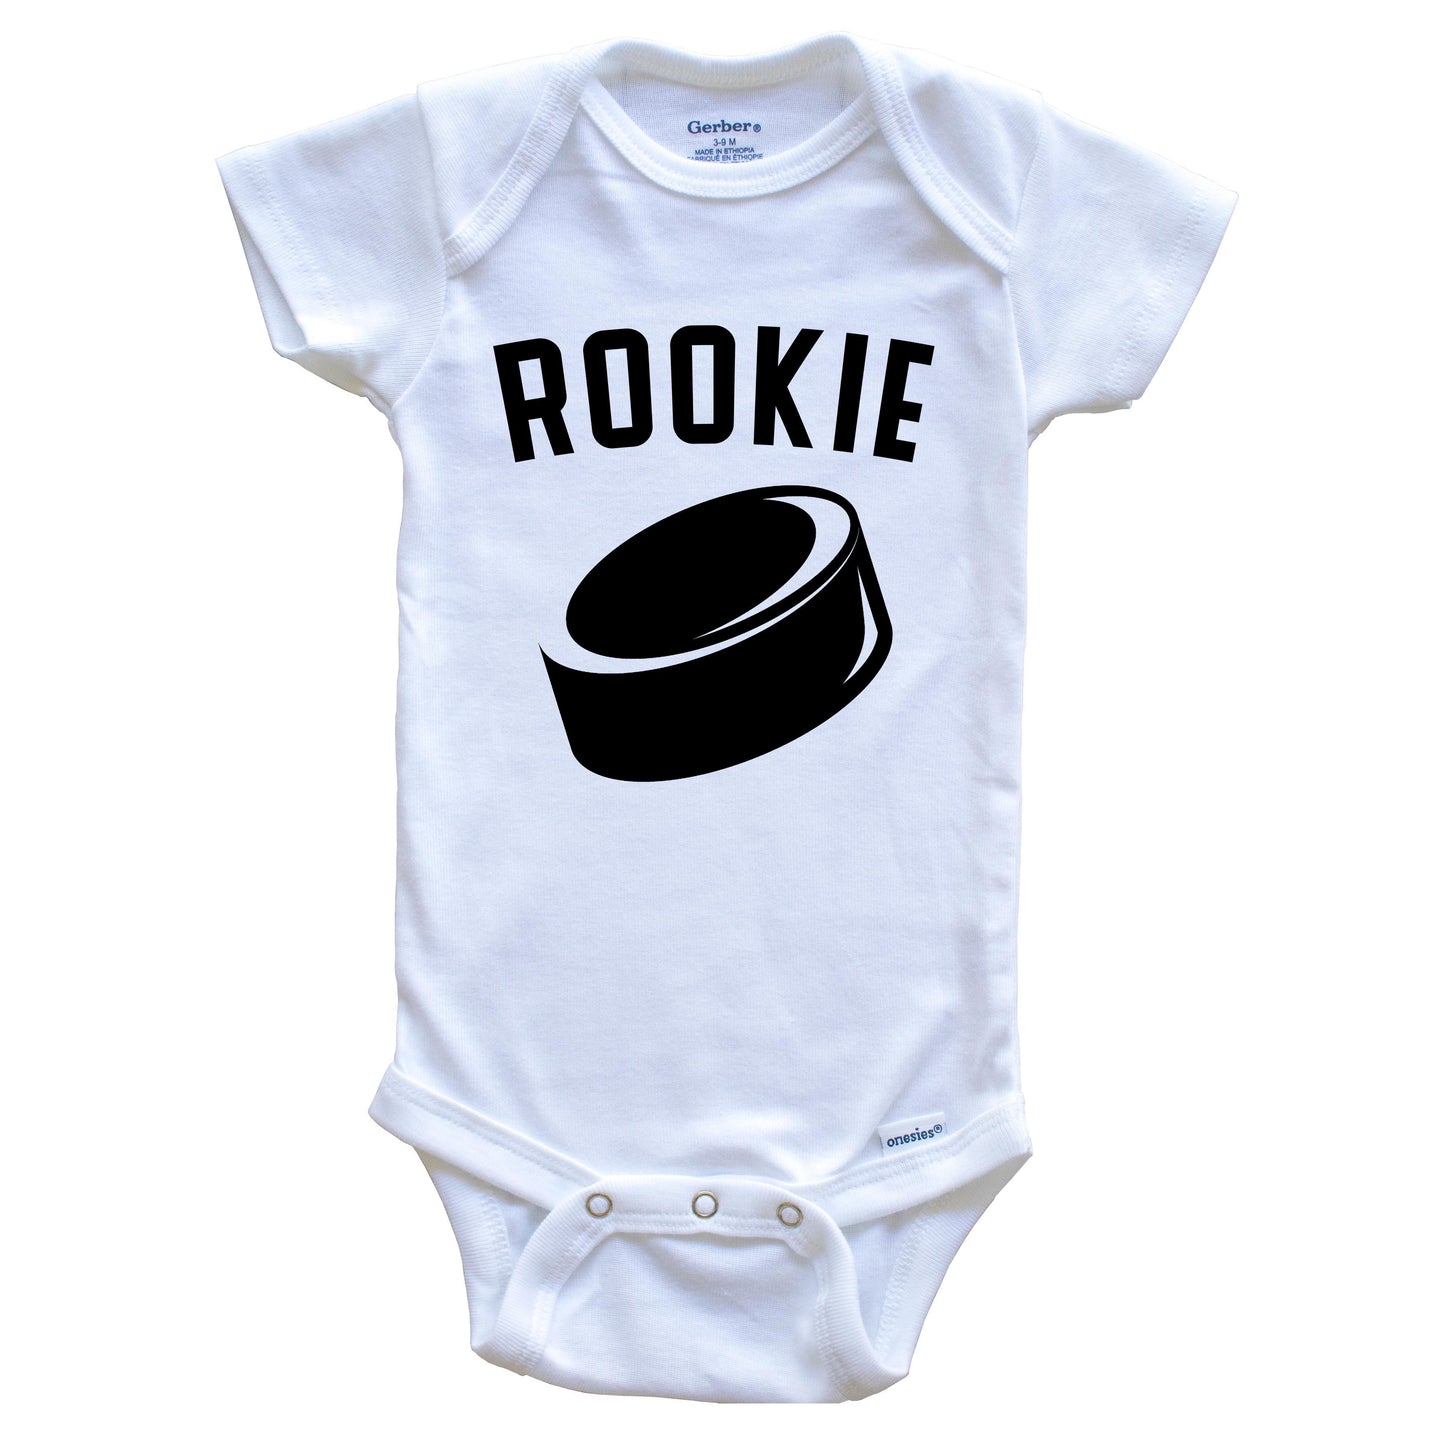 Hockey Rookie Baby Onesie